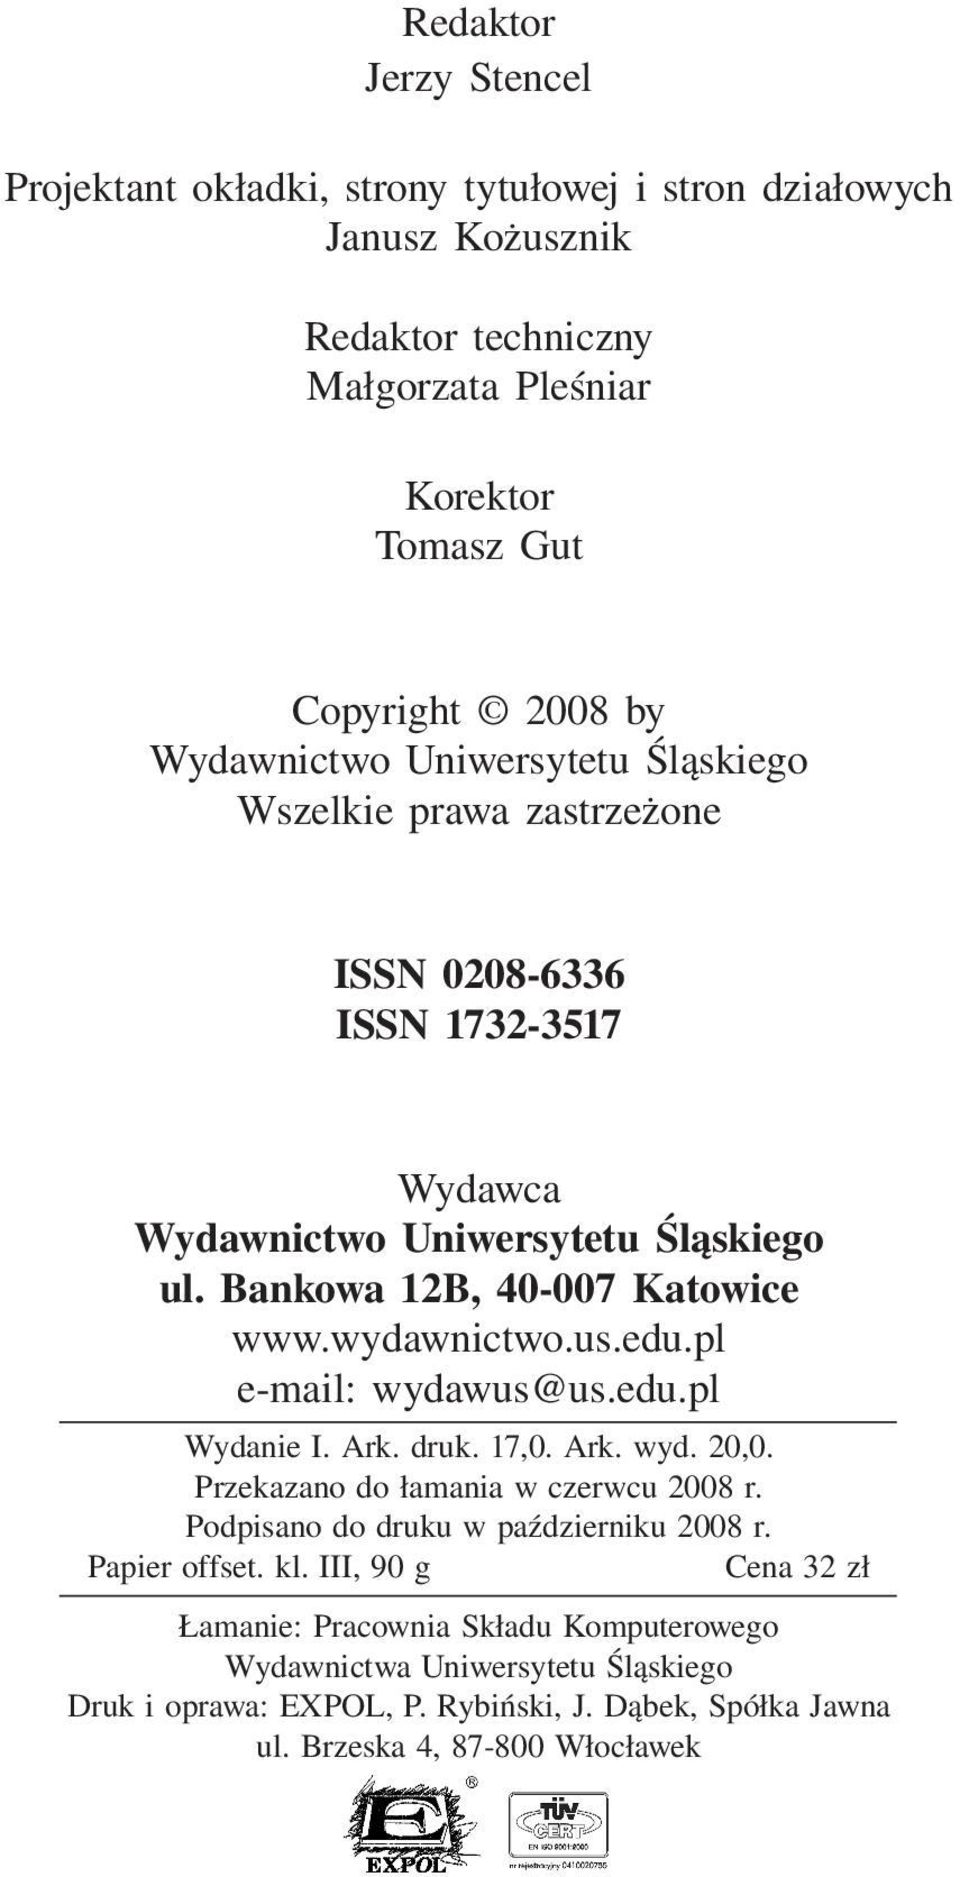 wydawnictwo.us.edu.pl e-mail: wydawus@us.edu.pl Wydanie I. Ark. druk. 17,0. Ark. wyd. 20,0. Przekazano do łamania w czerwcu 2008 r. Podpisano do druku w październiku 2008 r.